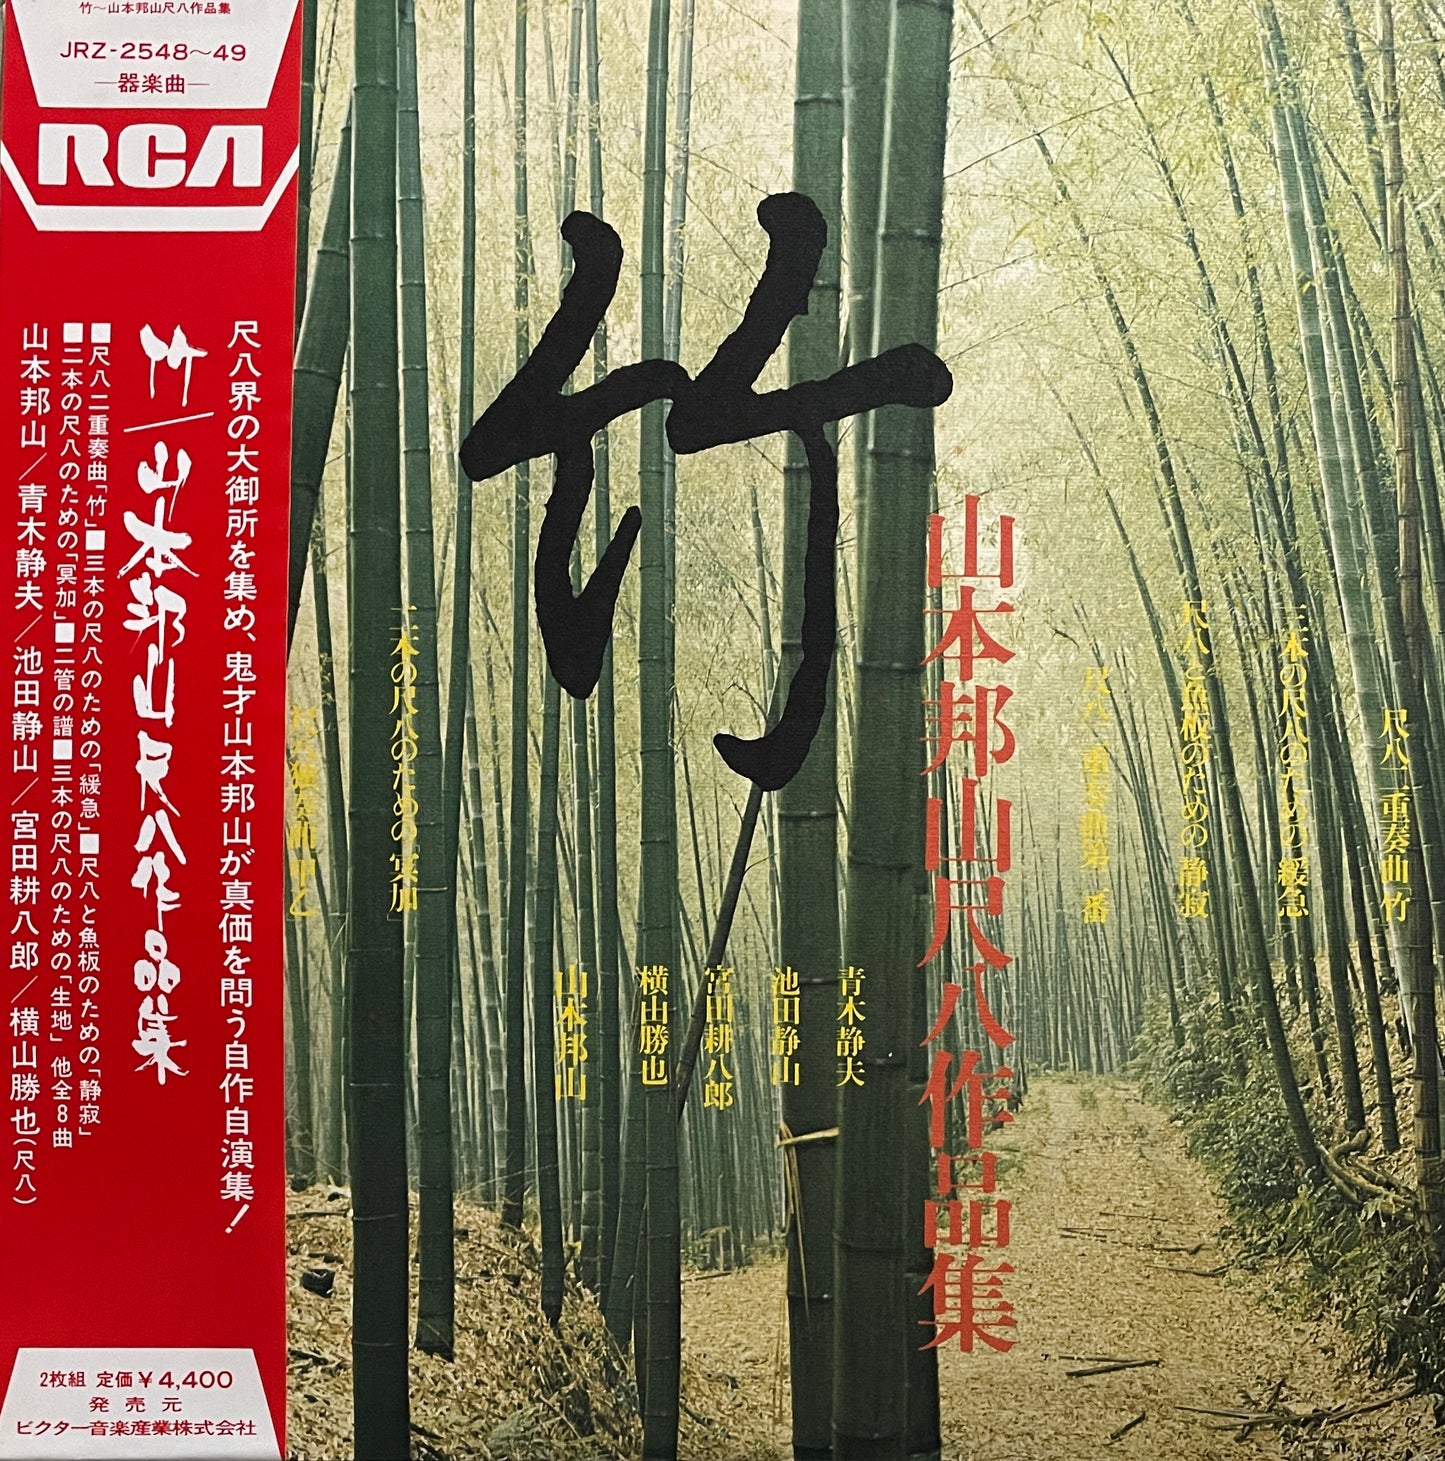 Hozan Yamamoto "竹" (1975)